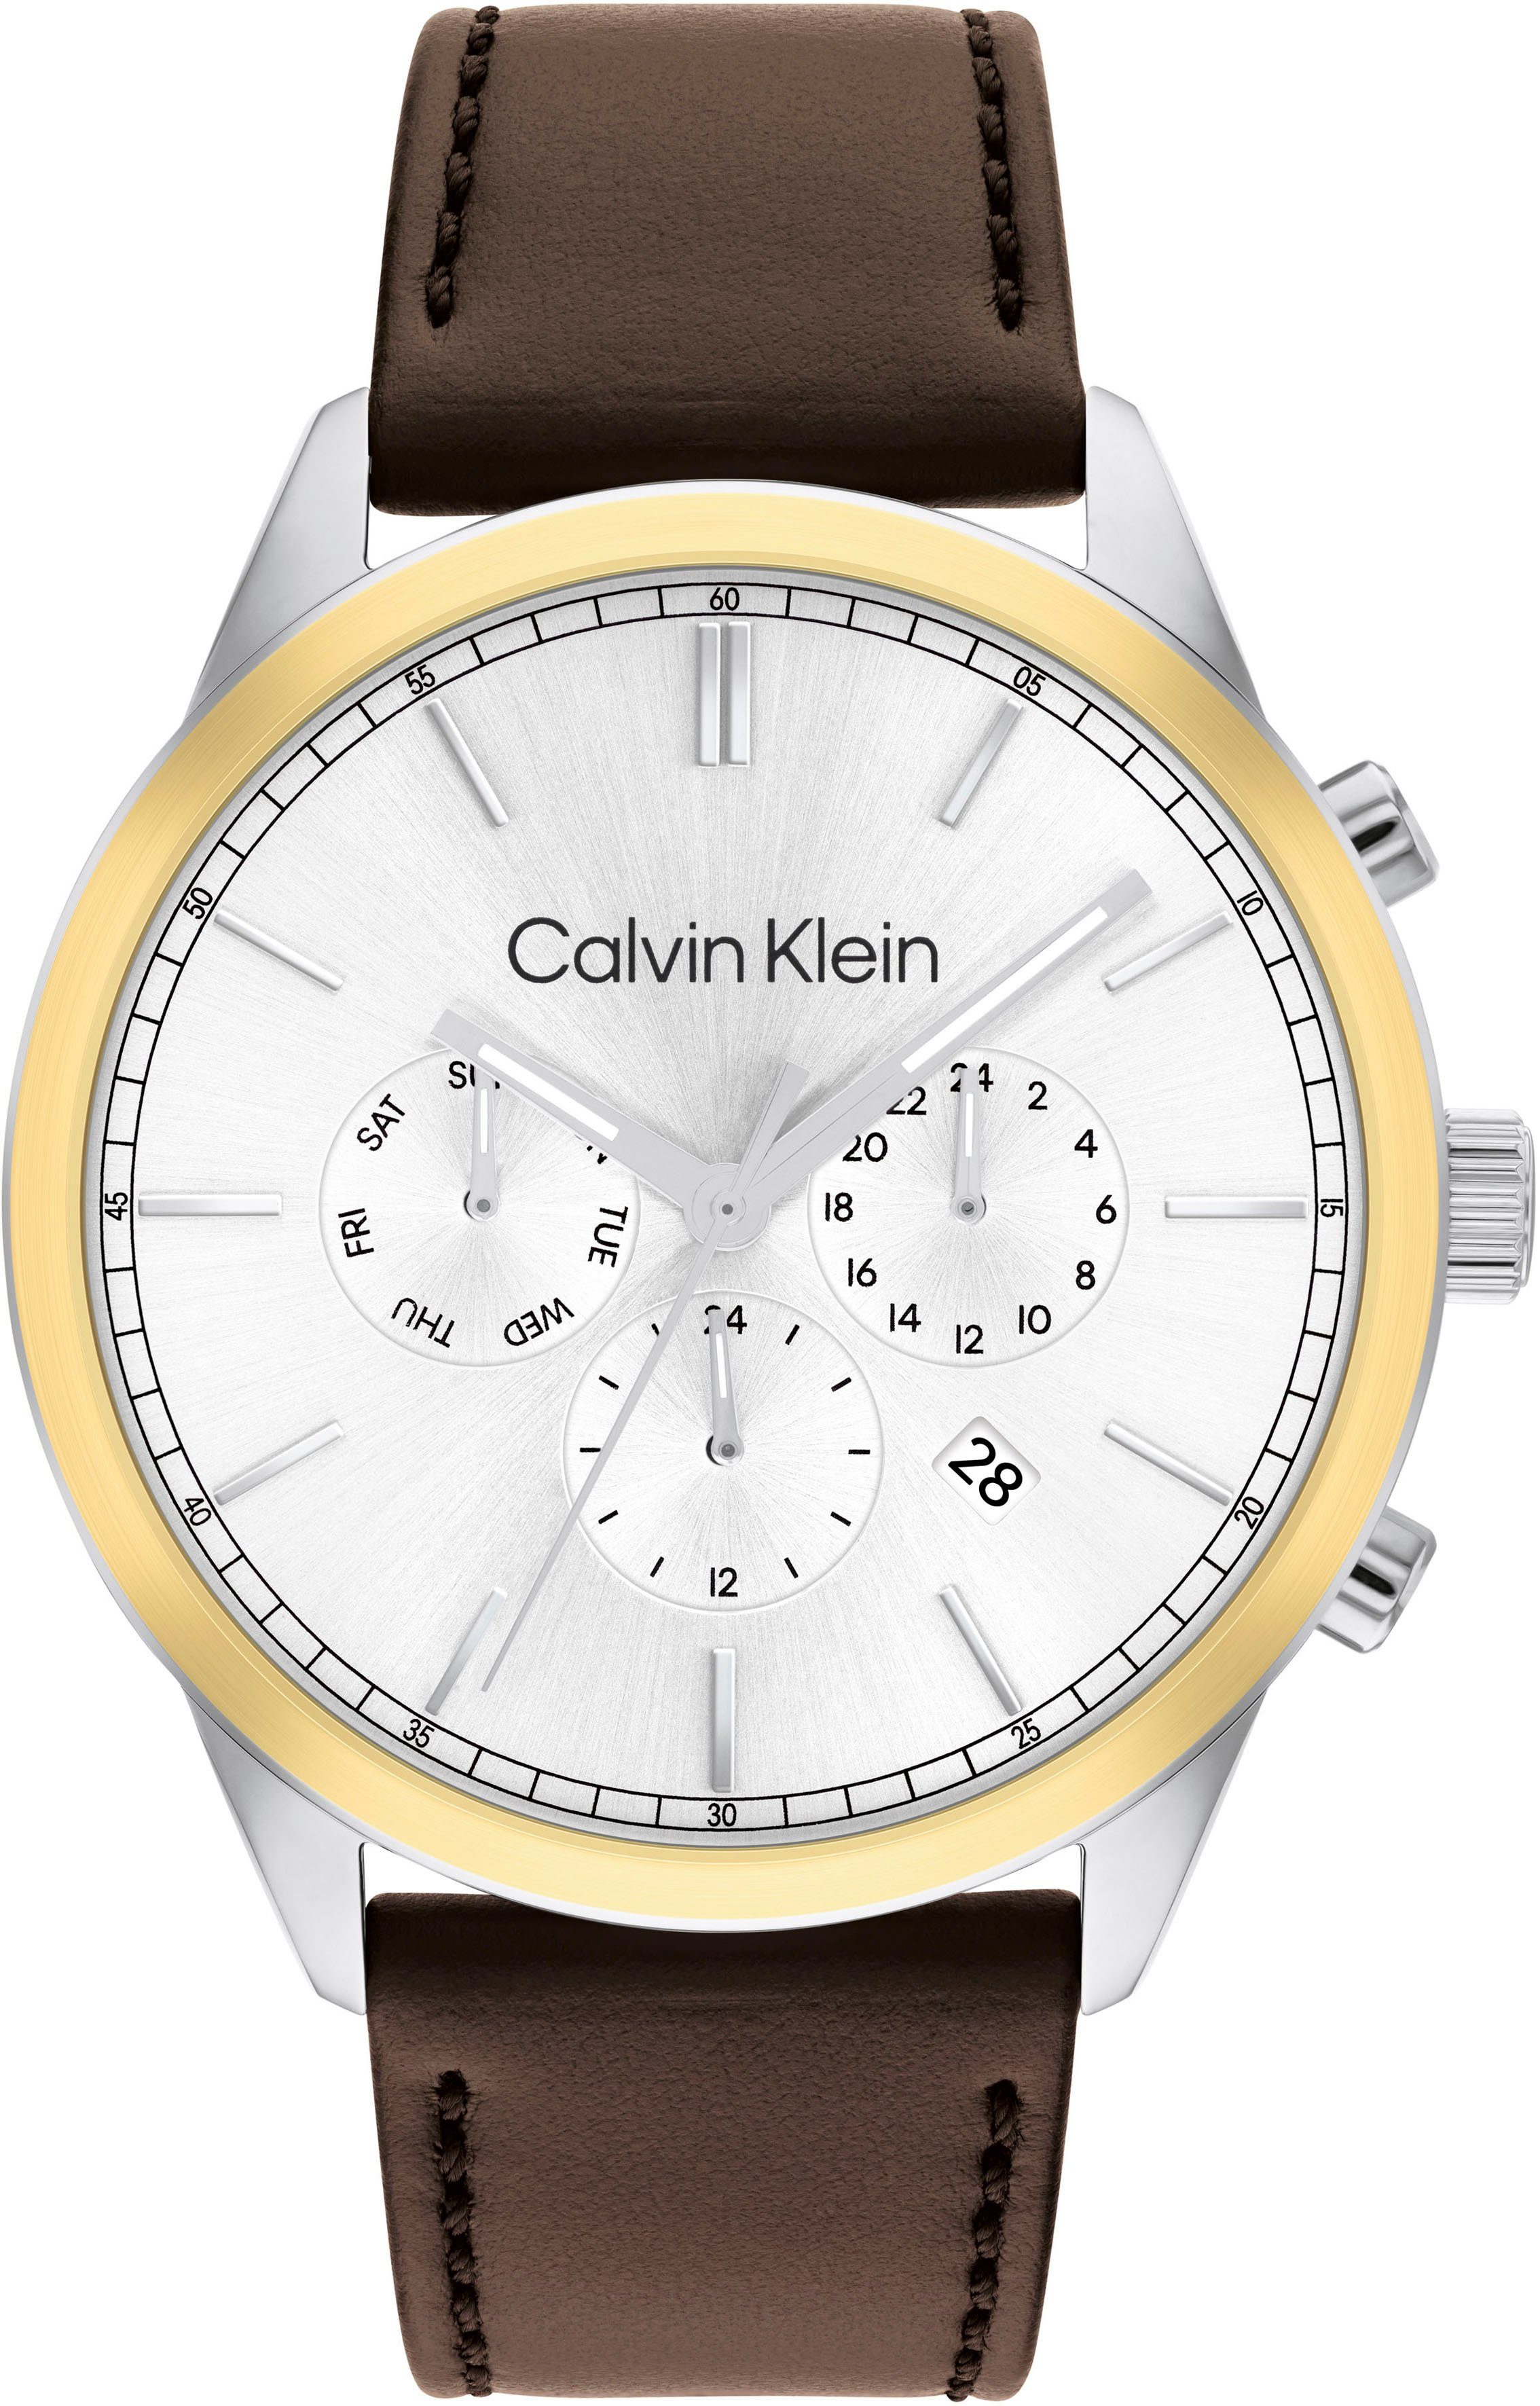 Klein Calvin Multifunktionsuhr 25200381